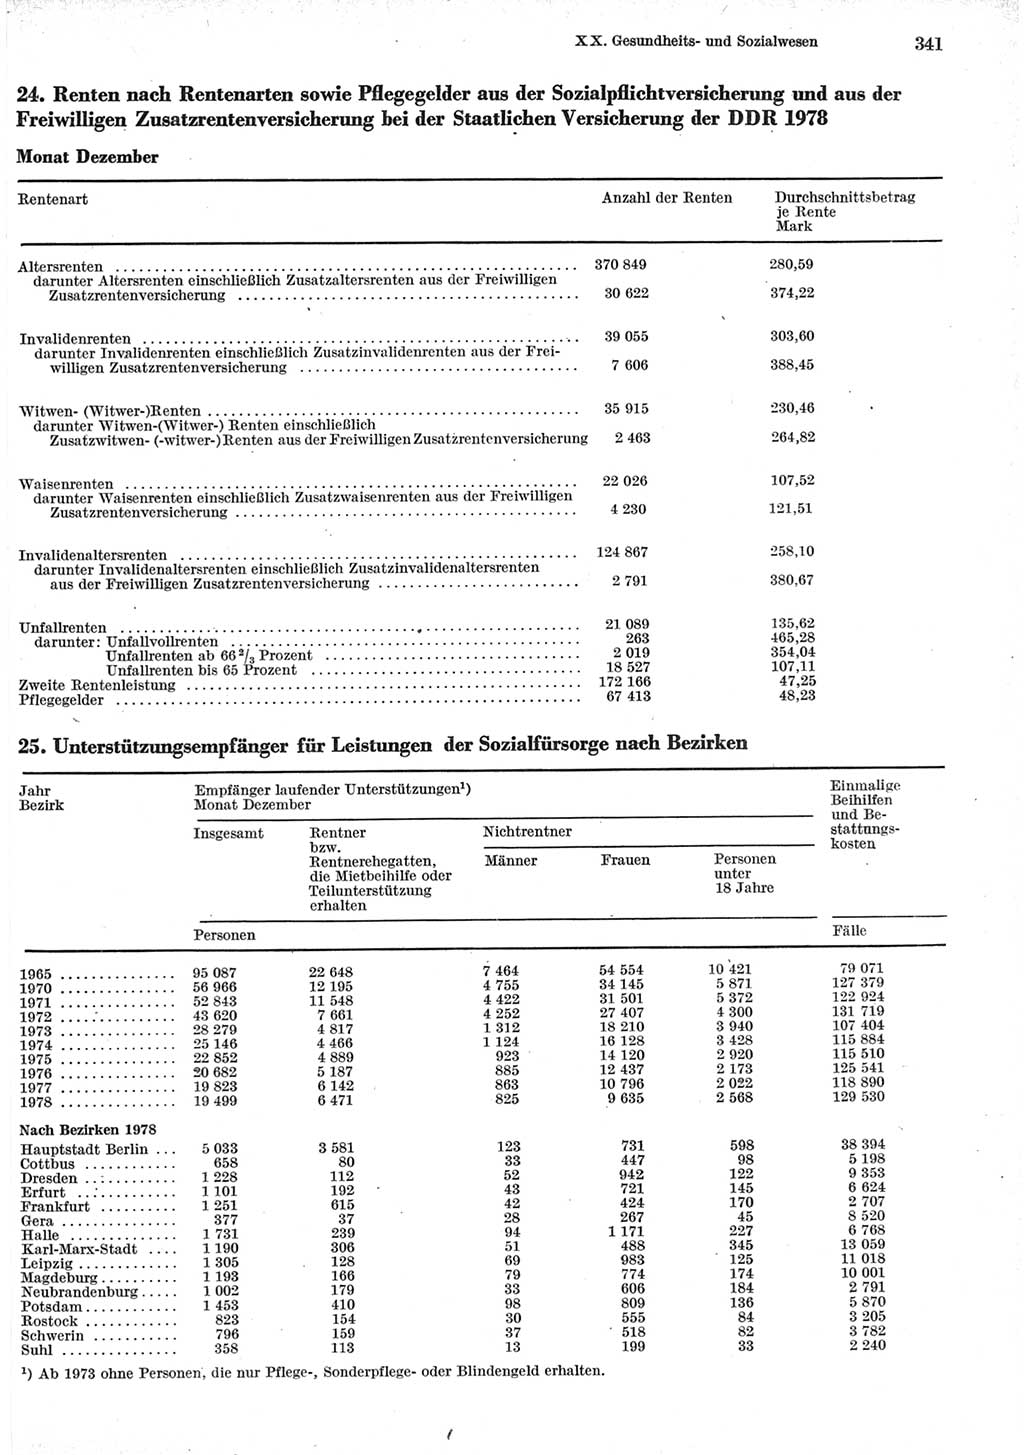 Statistisches Jahrbuch der Deutschen Demokratischen Republik (DDR) 1979, Seite 341 (Stat. Jb. DDR 1979, S. 341)